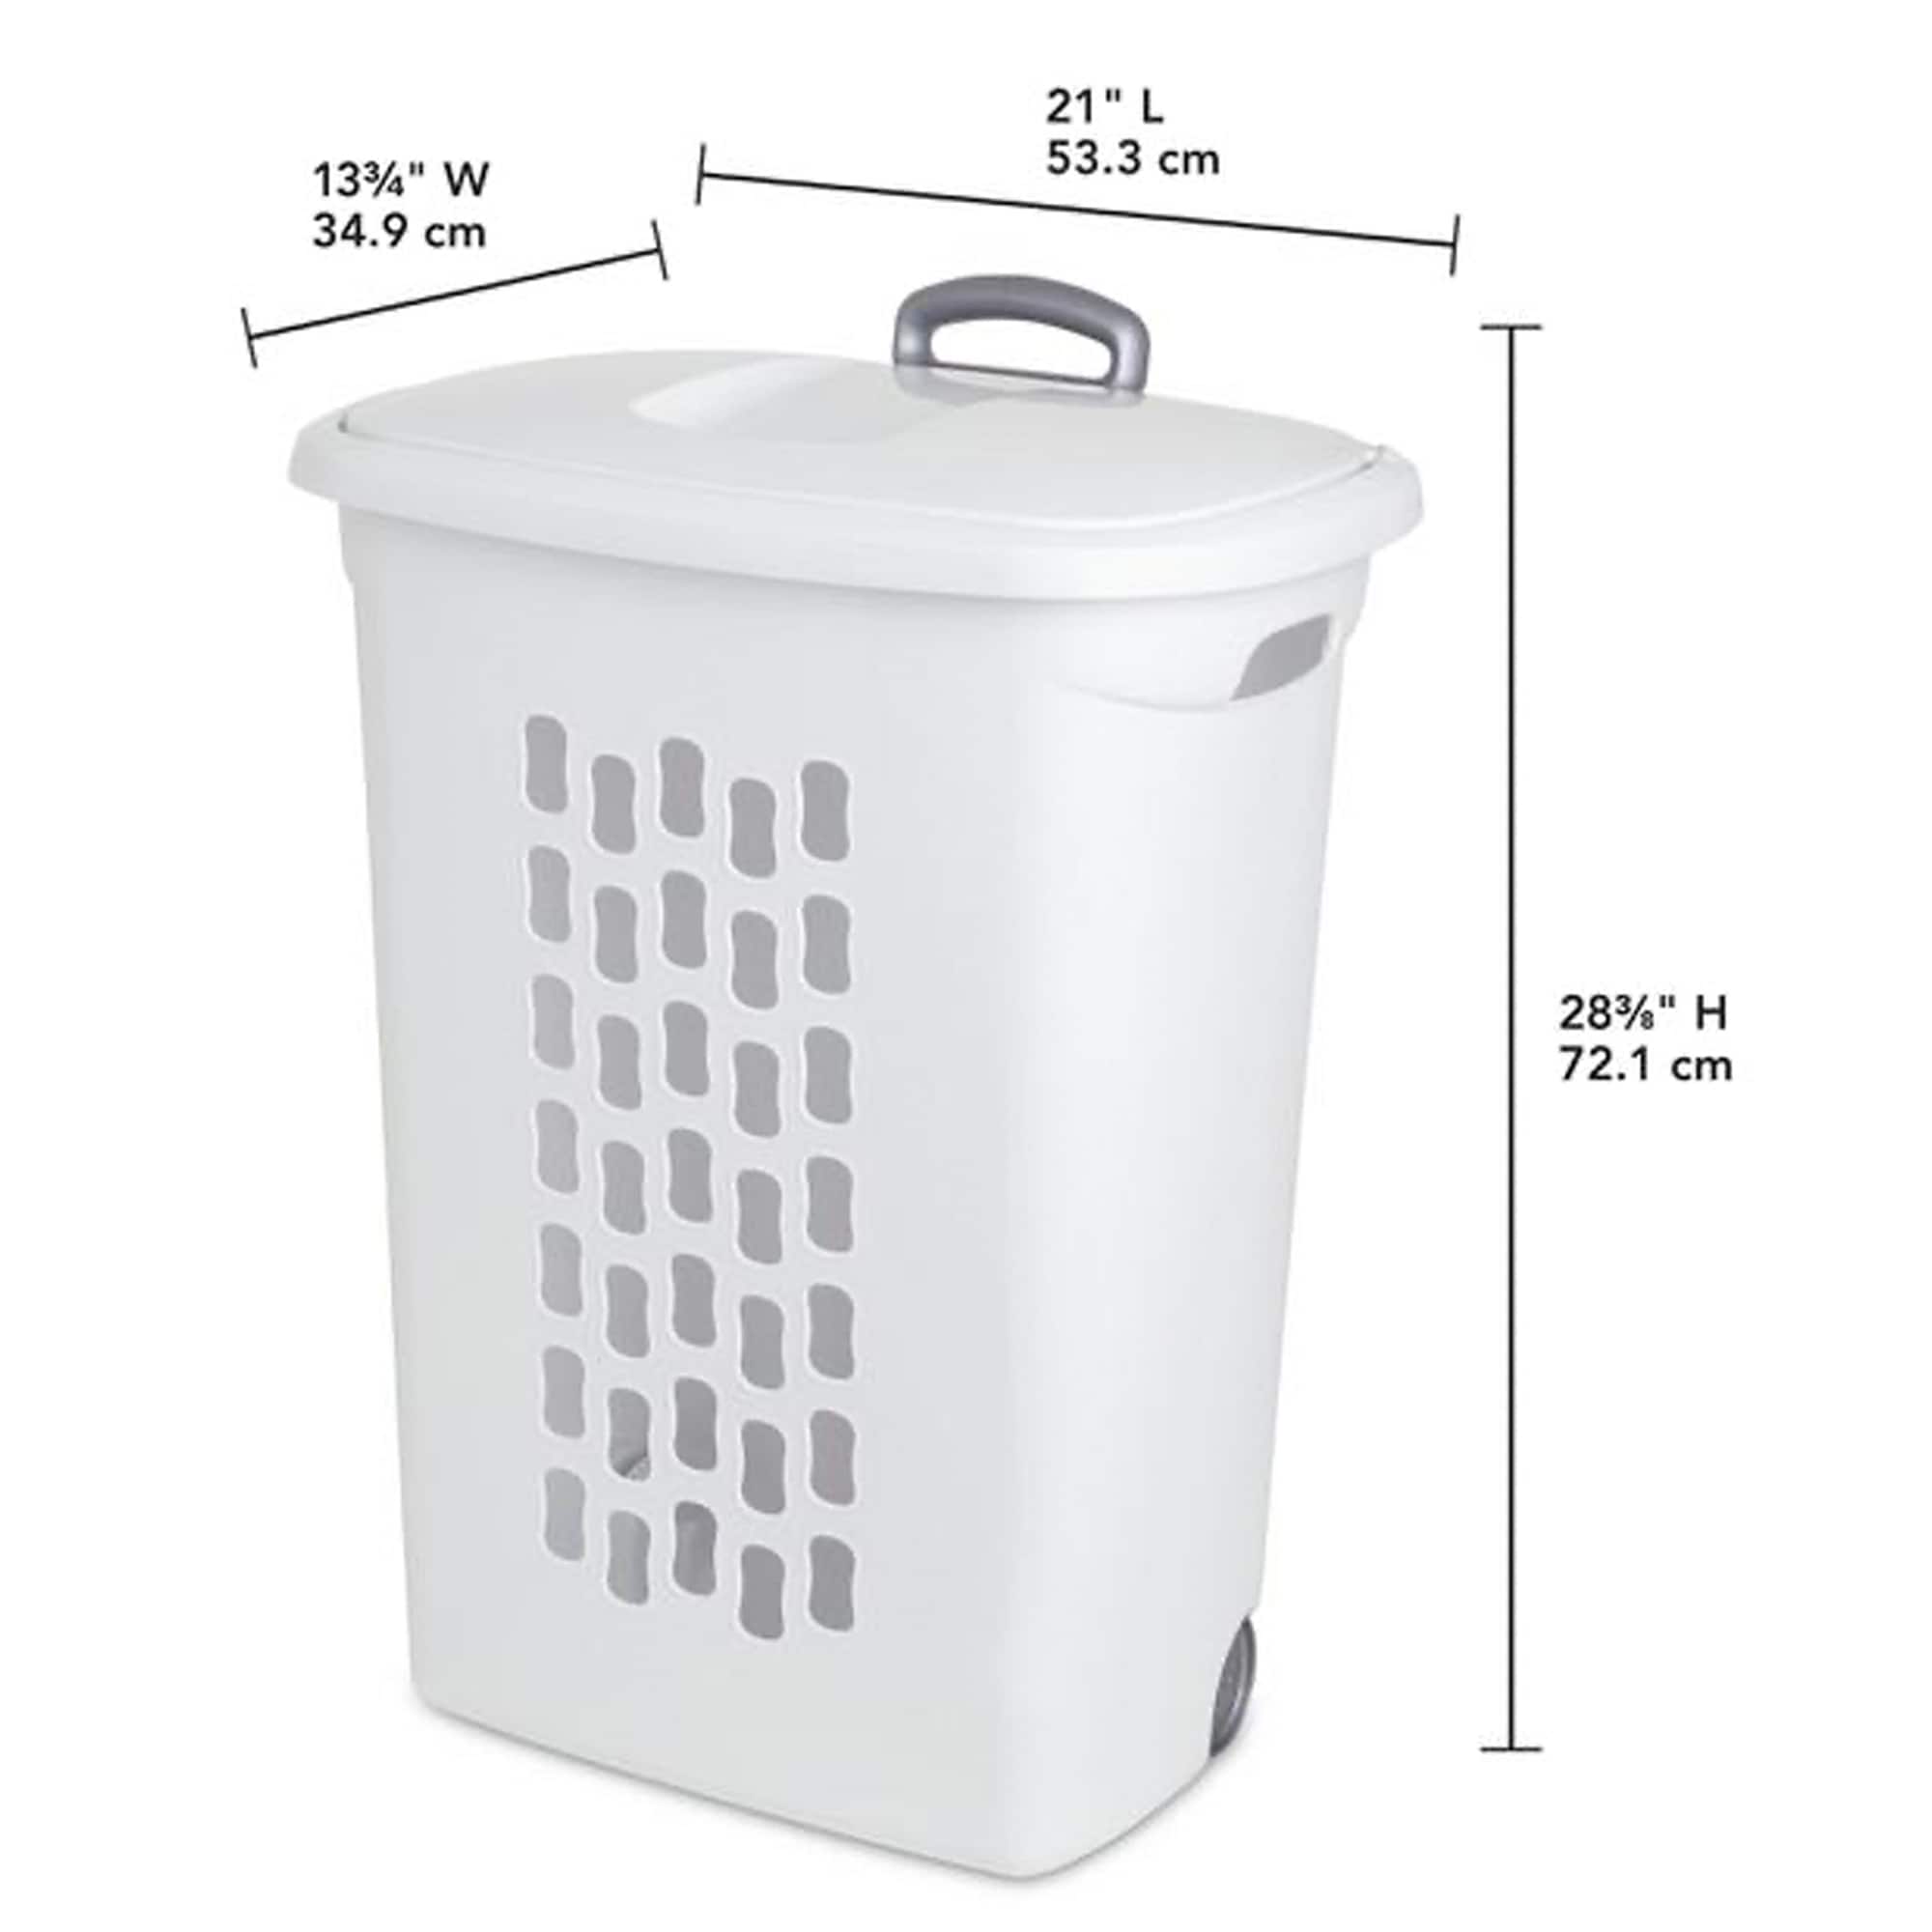 Sterilite 1213 - 2.2 Bushel Divided Laundry Basket White 12138004